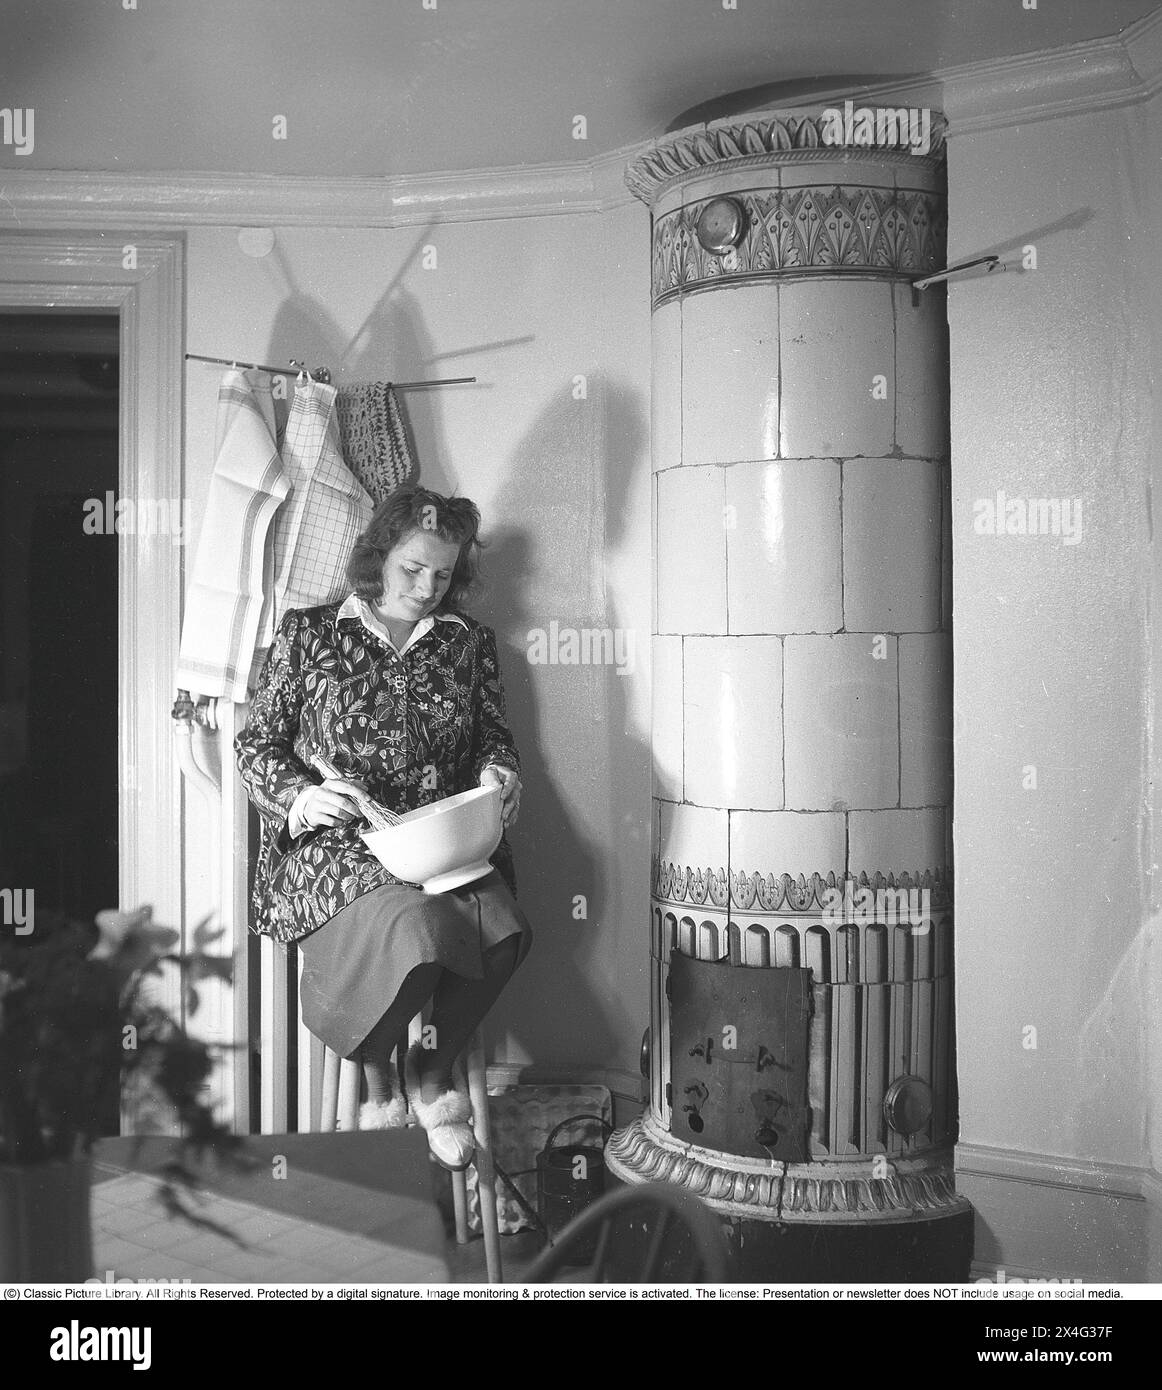 In den 1940er Jahren Das Innere eines Zimmers und eine junge Frau mit einer Schüssel im Knie, die den Inhalt quetscht. Sie sitzt neben einem Kachelofen, einer Holzheizquelle, die in der Vergangenheit üblich war. Die Wärme wurde lange Zeit in der großen Masse des Ofens gespeichert. Schweden 1946 Kristoffersson Ref. N138-3 Stockfoto